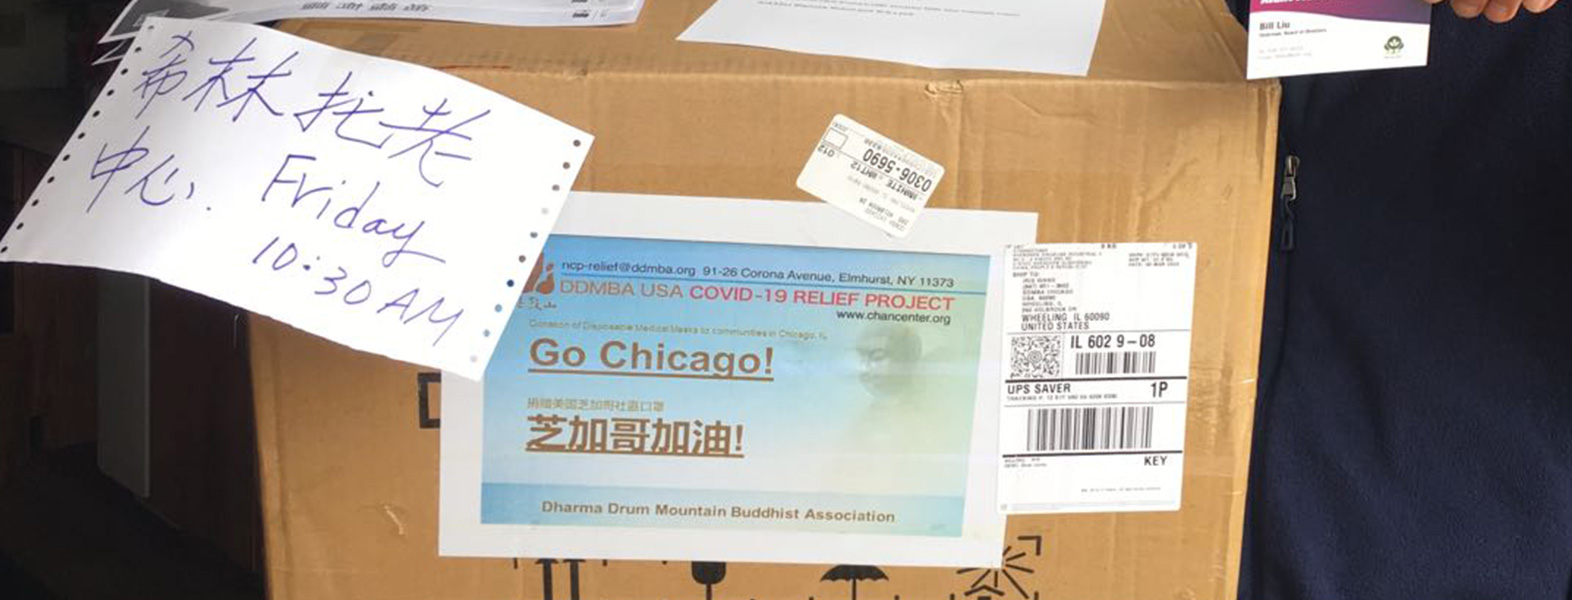 美國COVID-19疫情救助專案 - 芝加哥地區救援物資運送報導